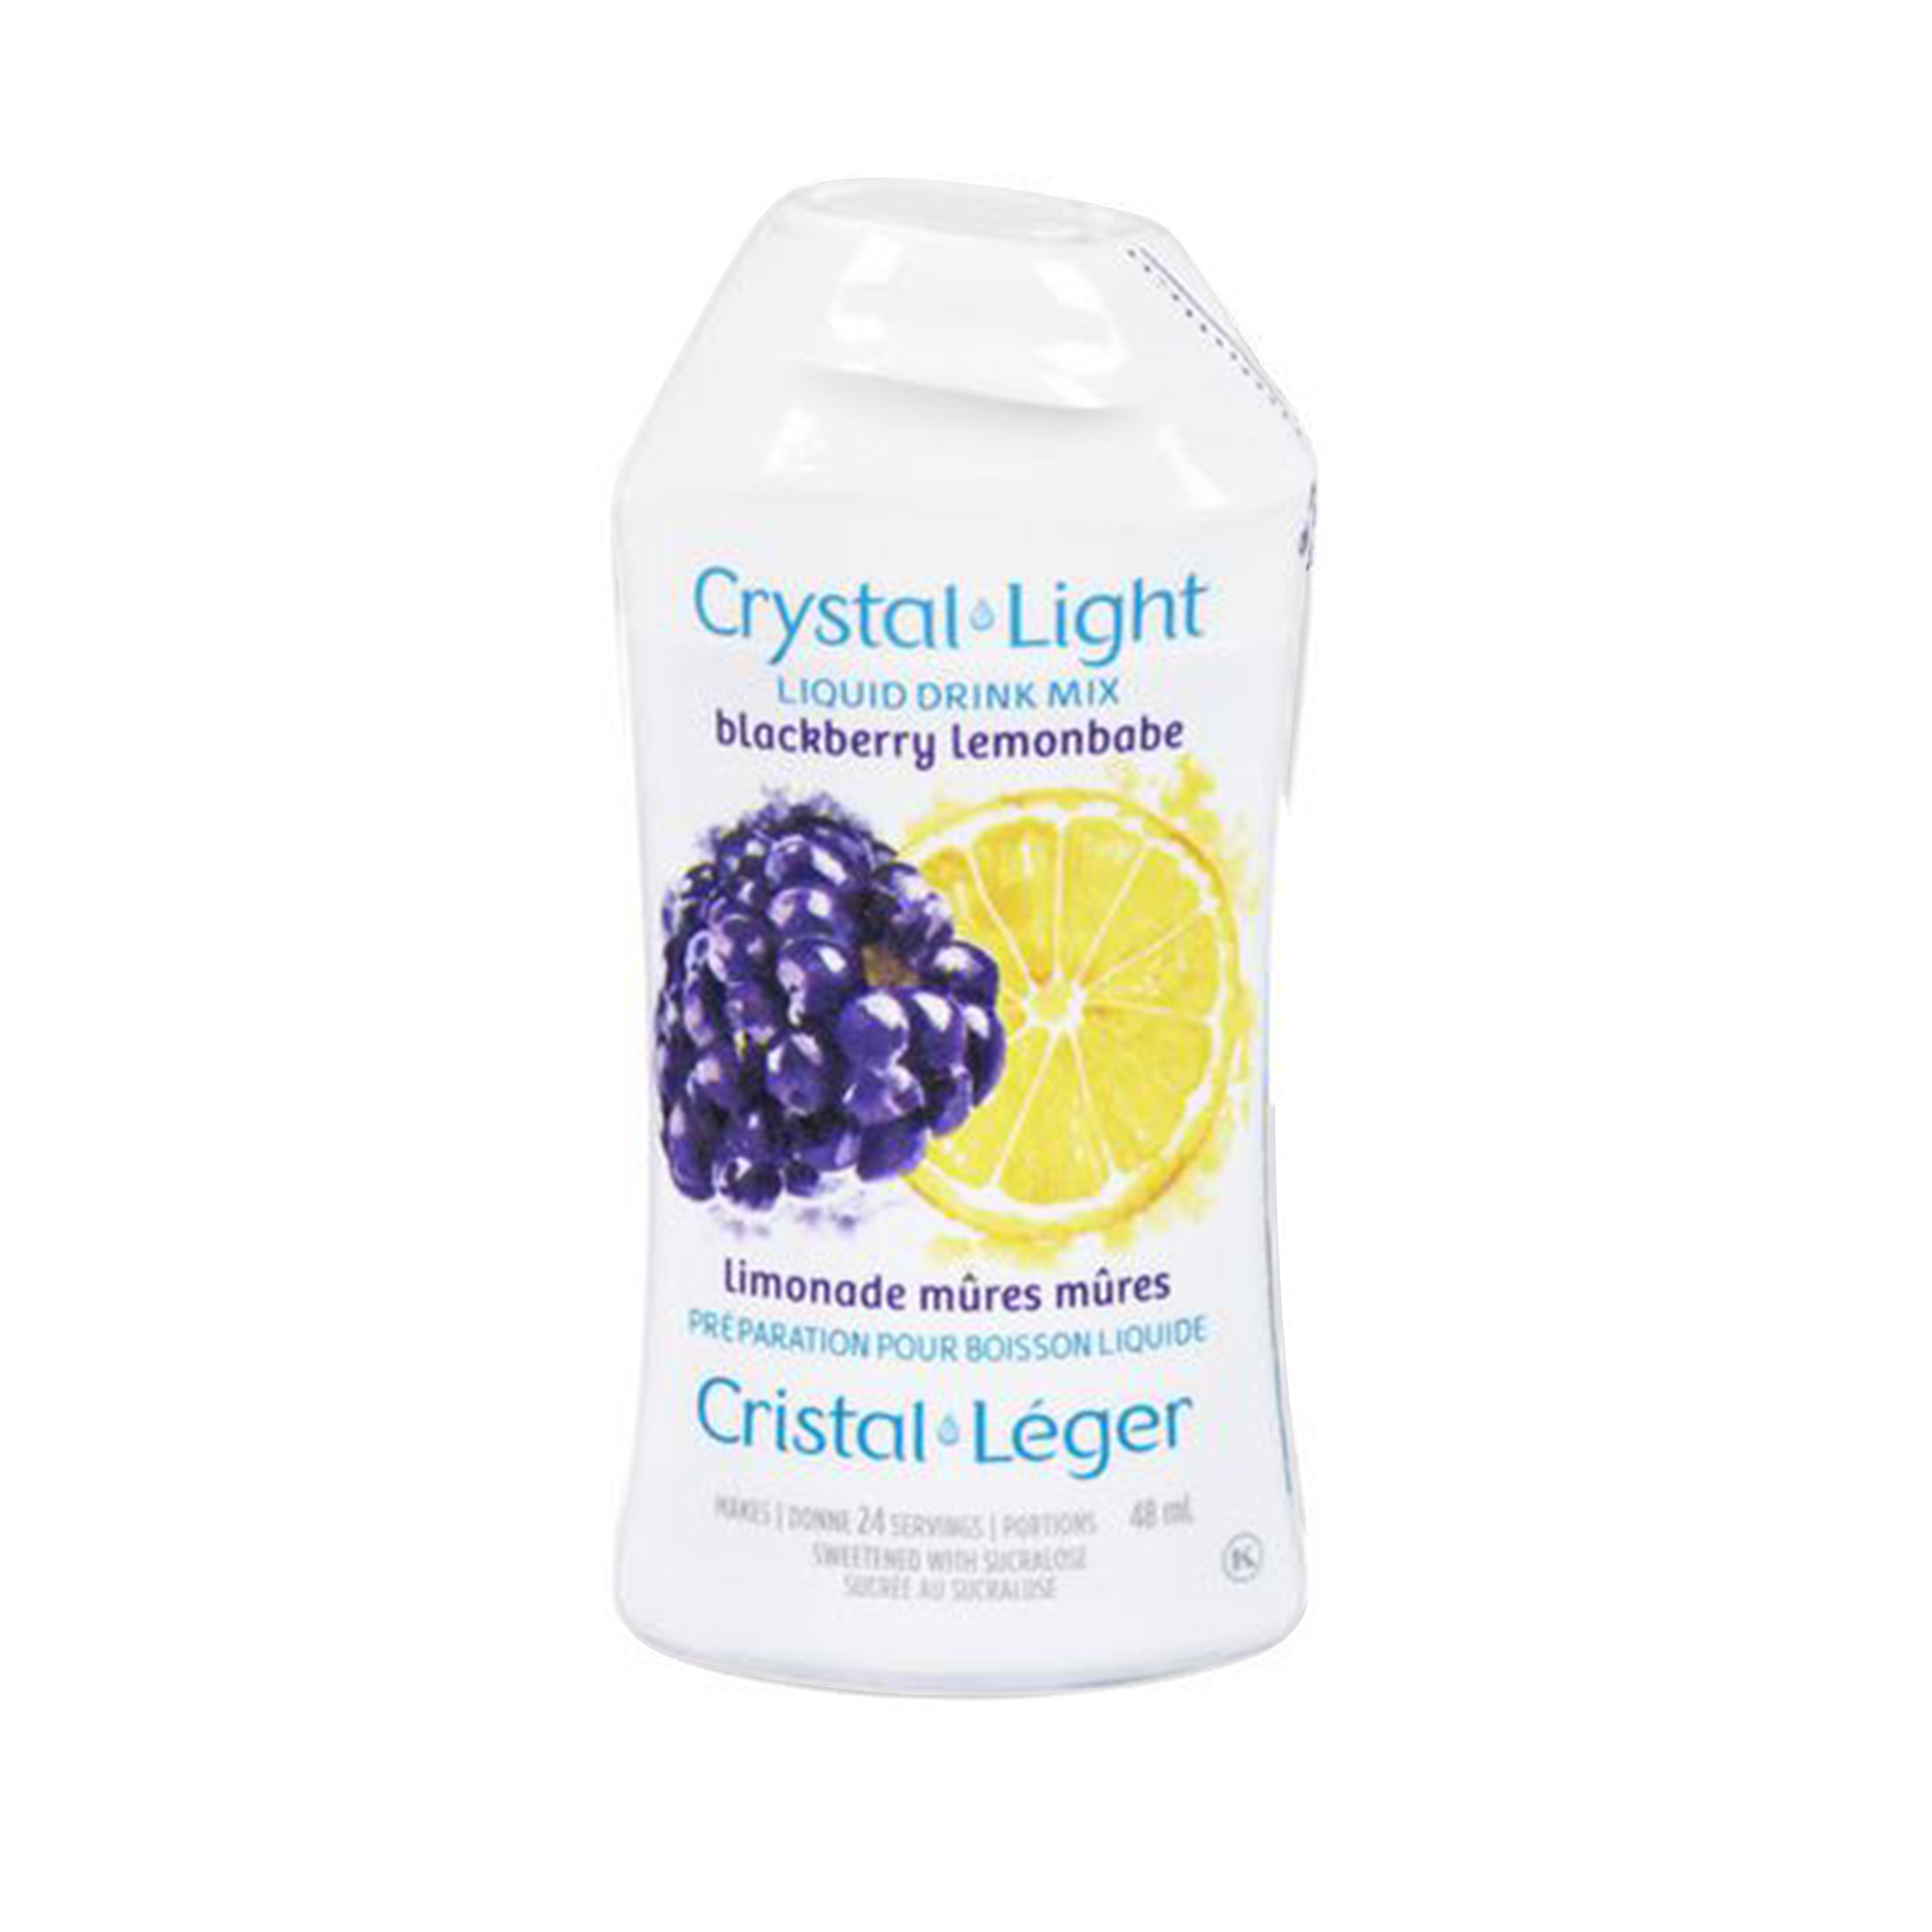 Crystal Light - Blackberry Lemonade